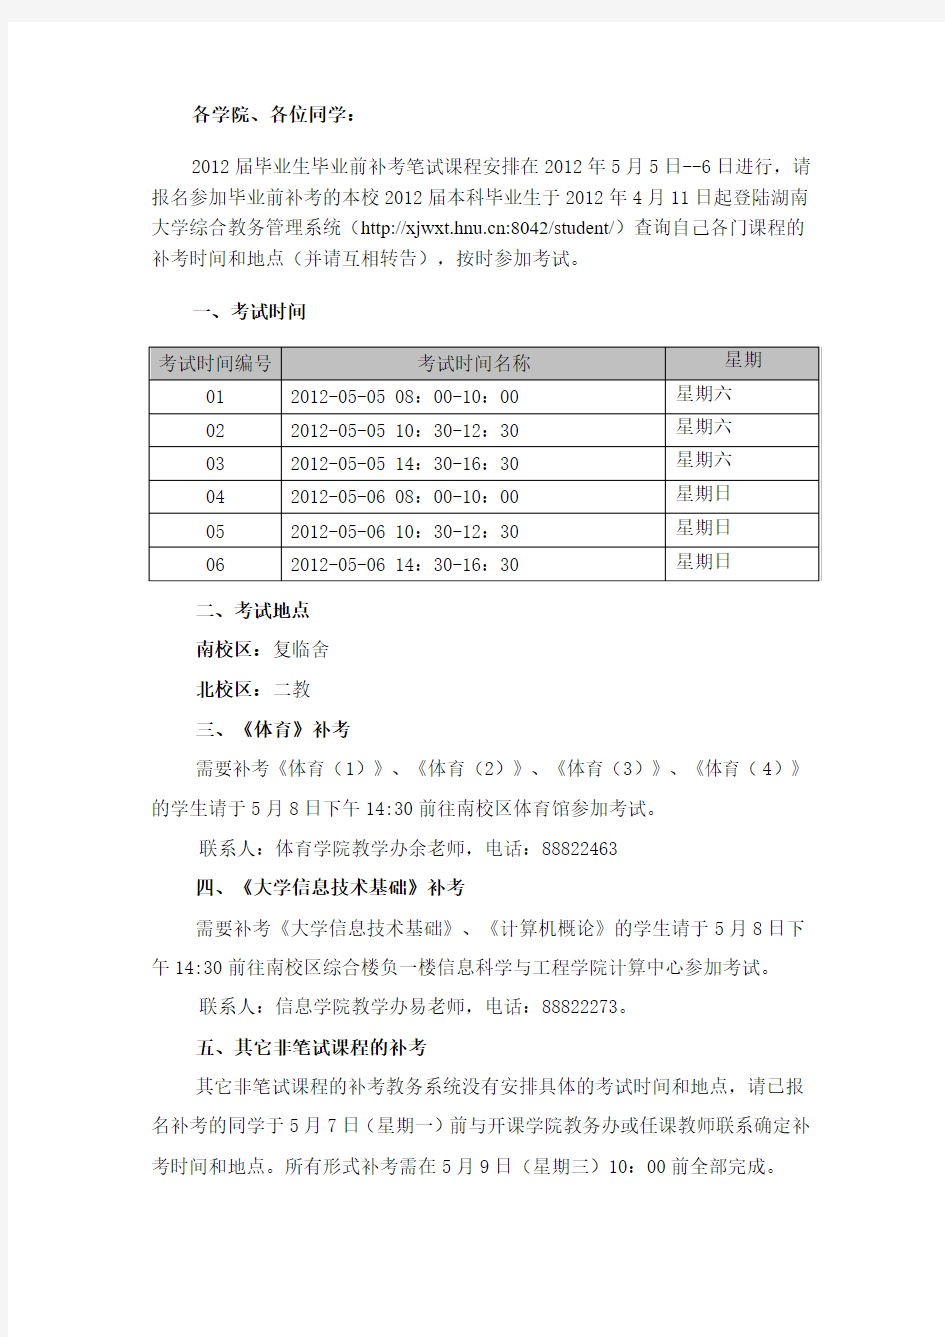 湖南大学关于公布2012届毕业生毕业前补考考试安排的通知